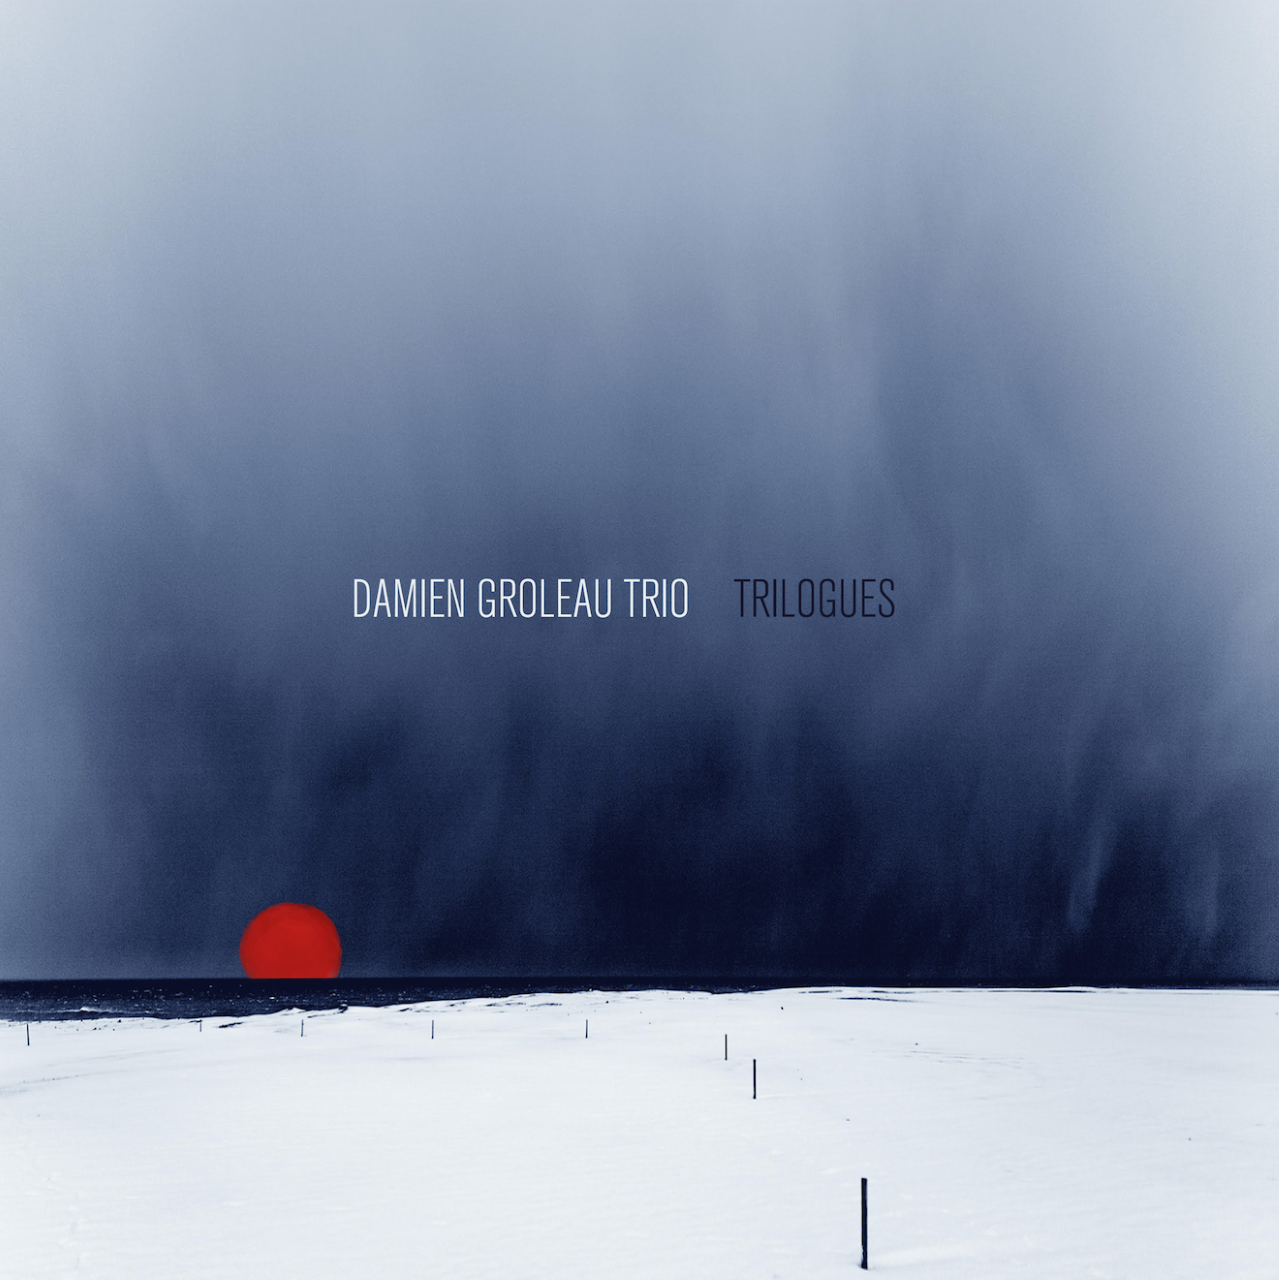     Damien Groleau,             pianist, flautist, composer
     - Album Trilogues